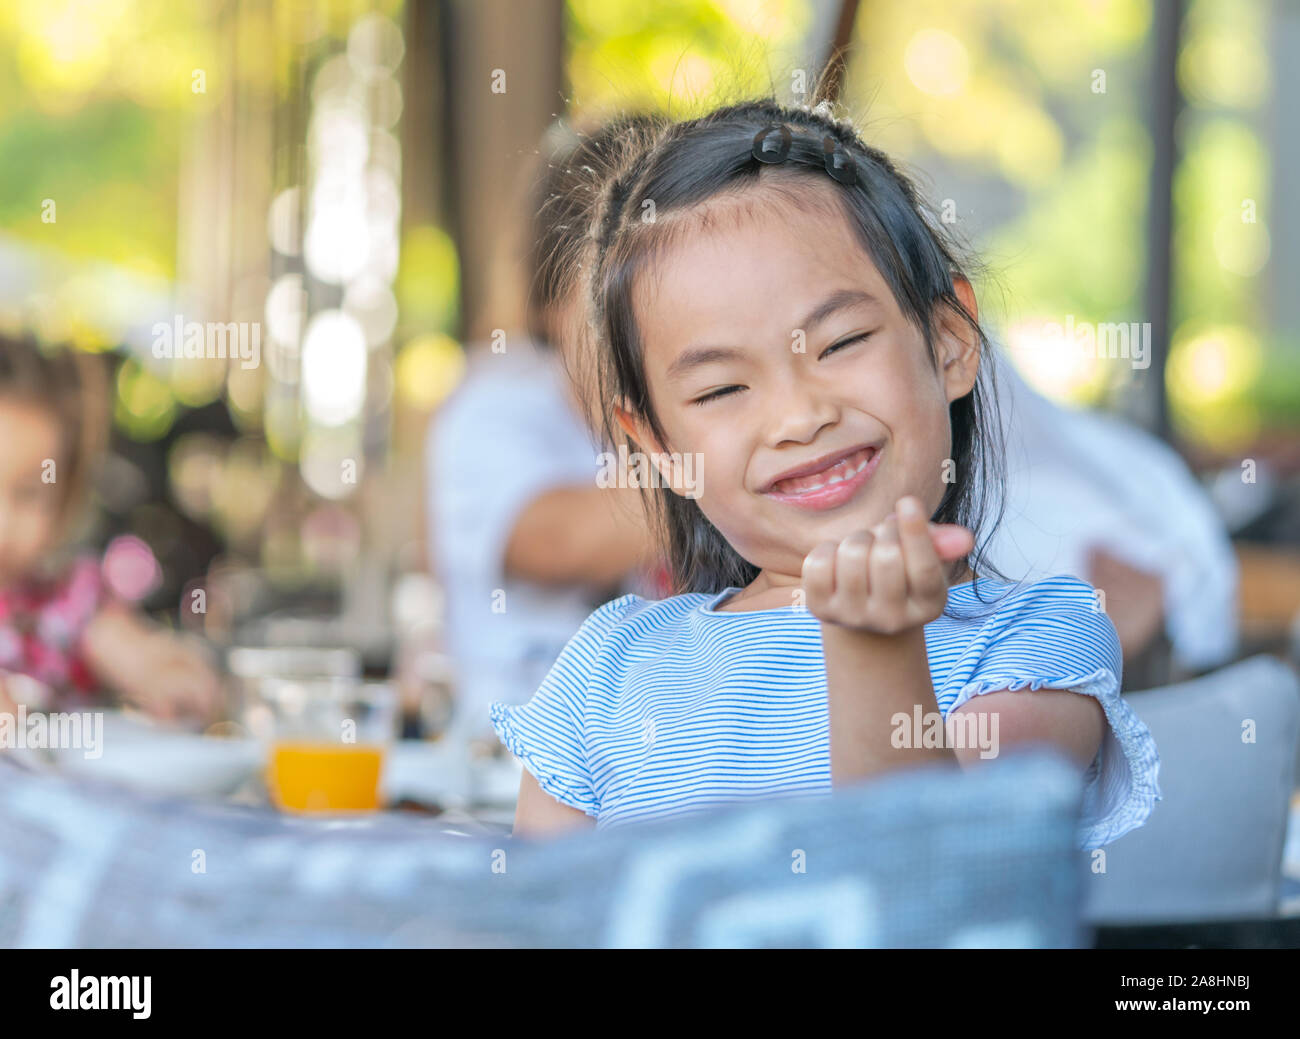 Niedliche kind Mädchen mit grossen Lächeln an den Tisch in einem Resort, versuchend, kleines Herz zu machen. Ausgewählte konzentrieren sich auf das Gesicht. Stockfoto